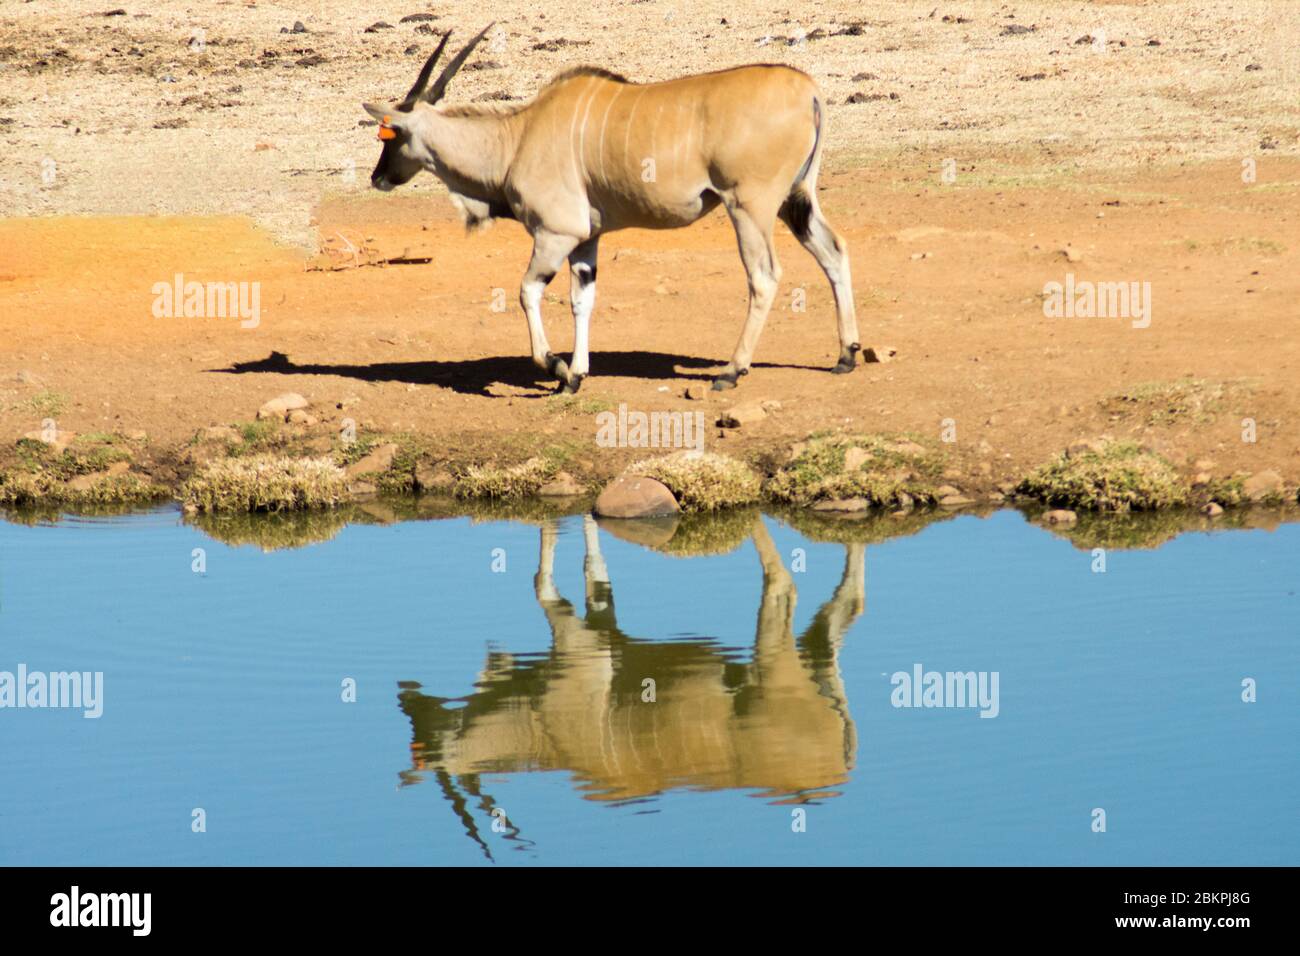 Un'Eland comune selvaggia (o Antelope) in una riserva di selvaggina sudafricana o un parco safari. La riflessione nell'acqua ha aggiunto una dimensione extr a questa immagine. Foto Stock